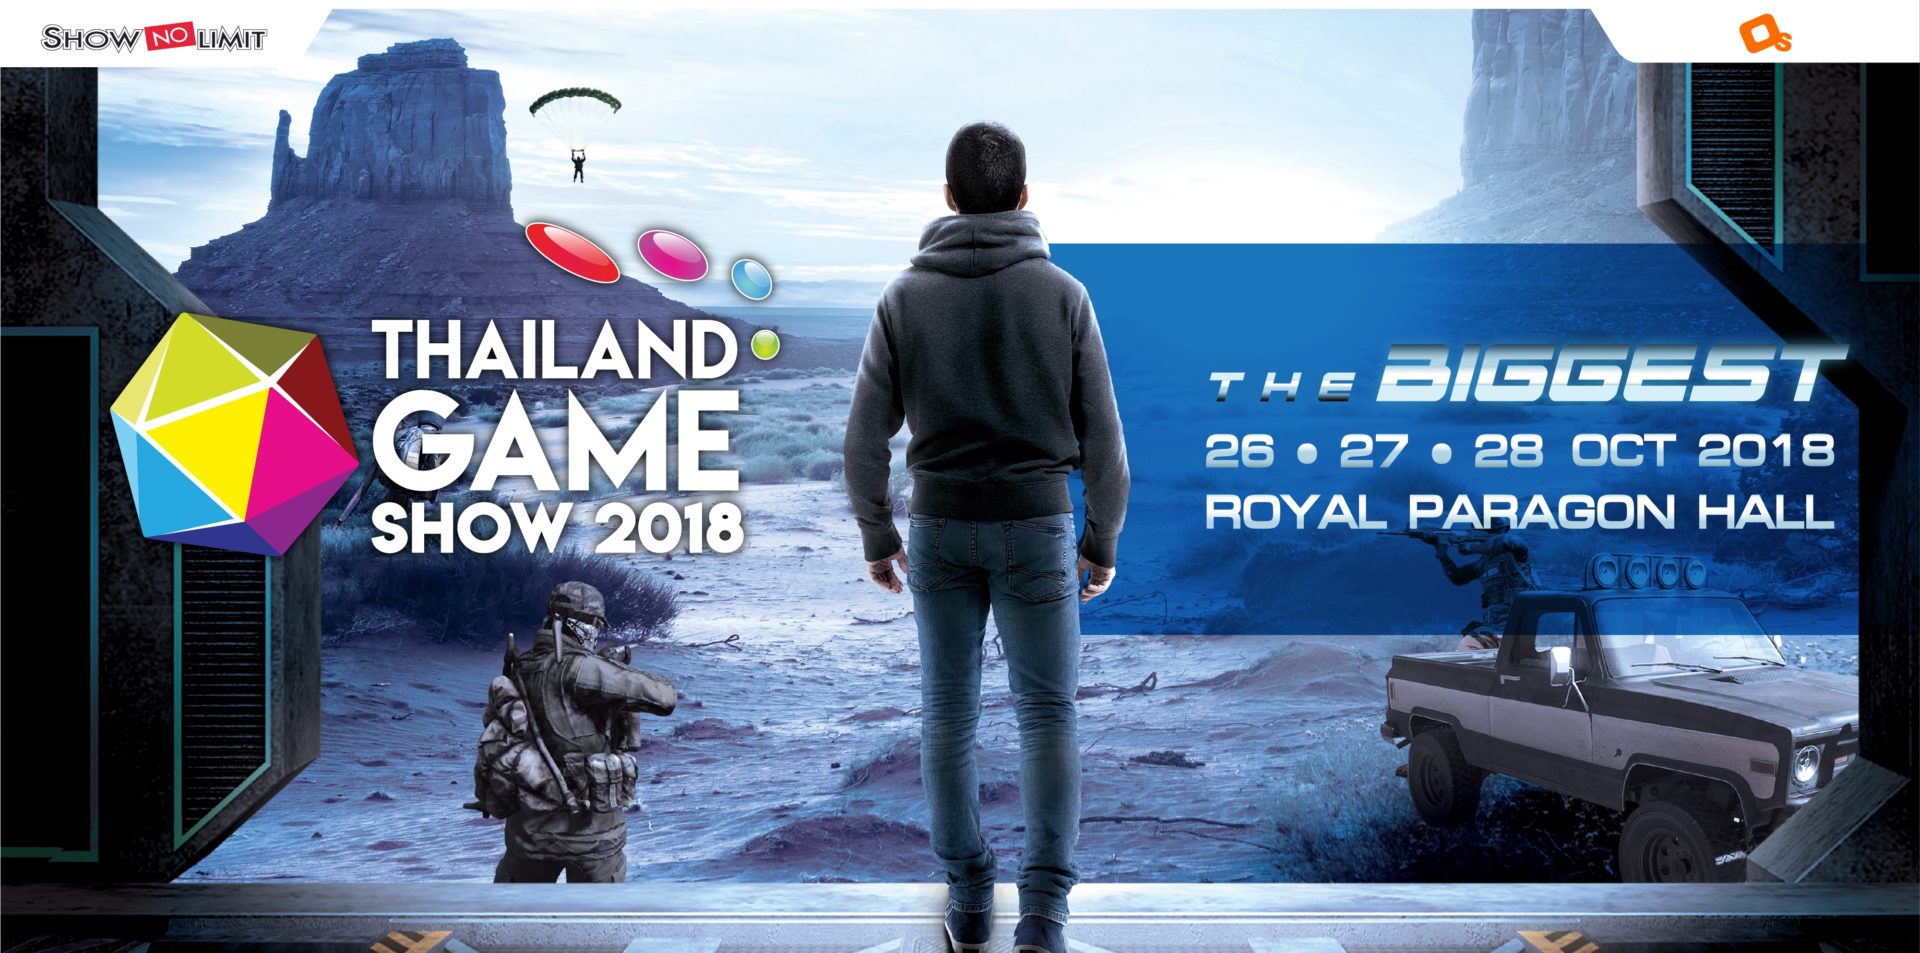 เตรียมตัวพบกับ Thailand Game Show 2018 THE BIGGEST 26 – 27 – 28 ตุลาคมนี้แน่นอน !!